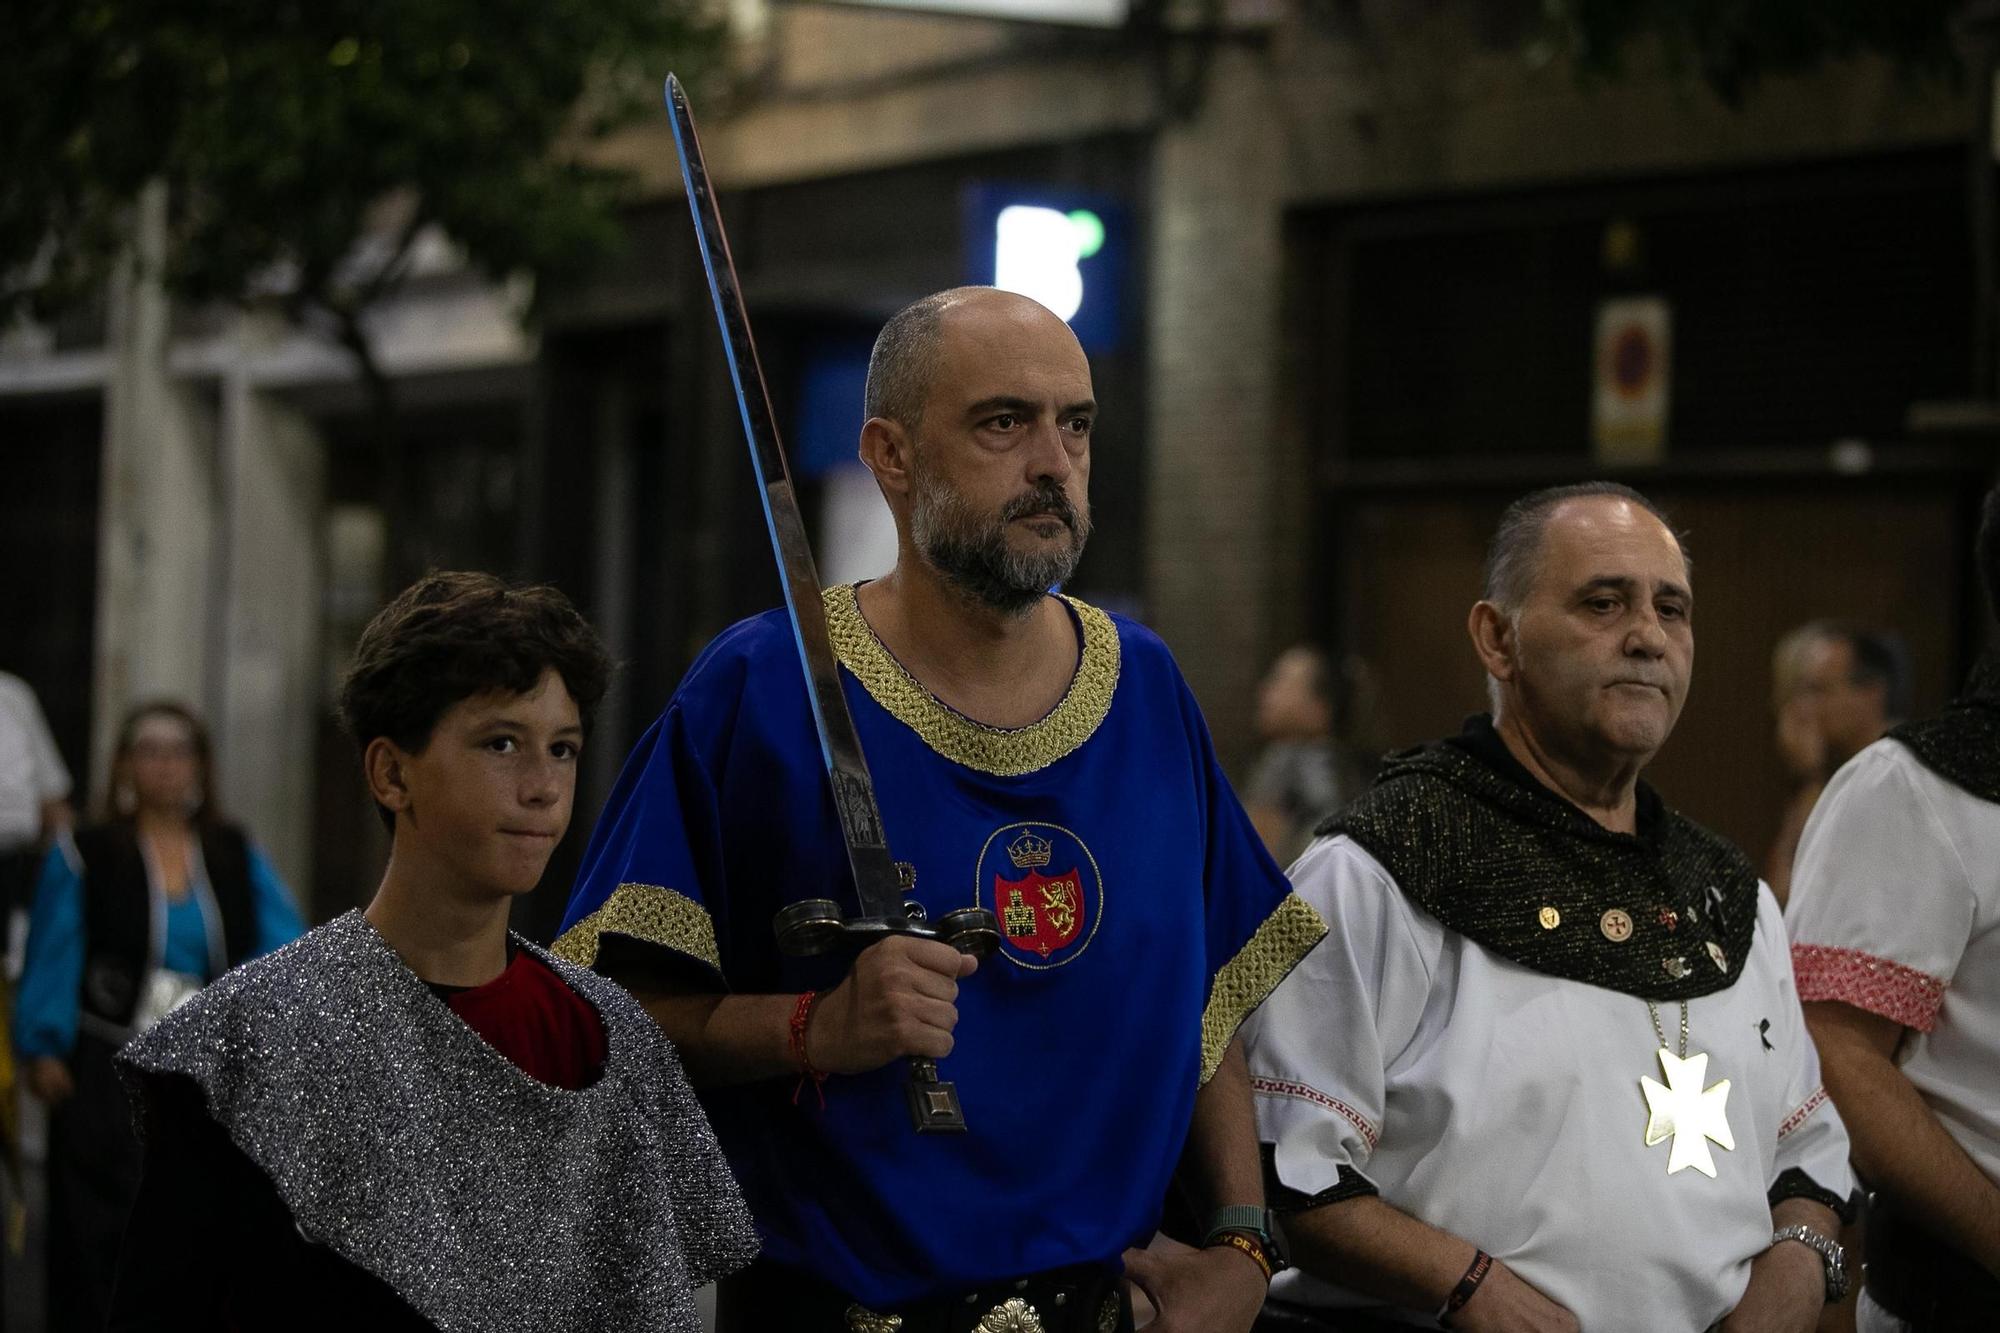 Las mejores fotos de Moros y Cristianos en Murcia